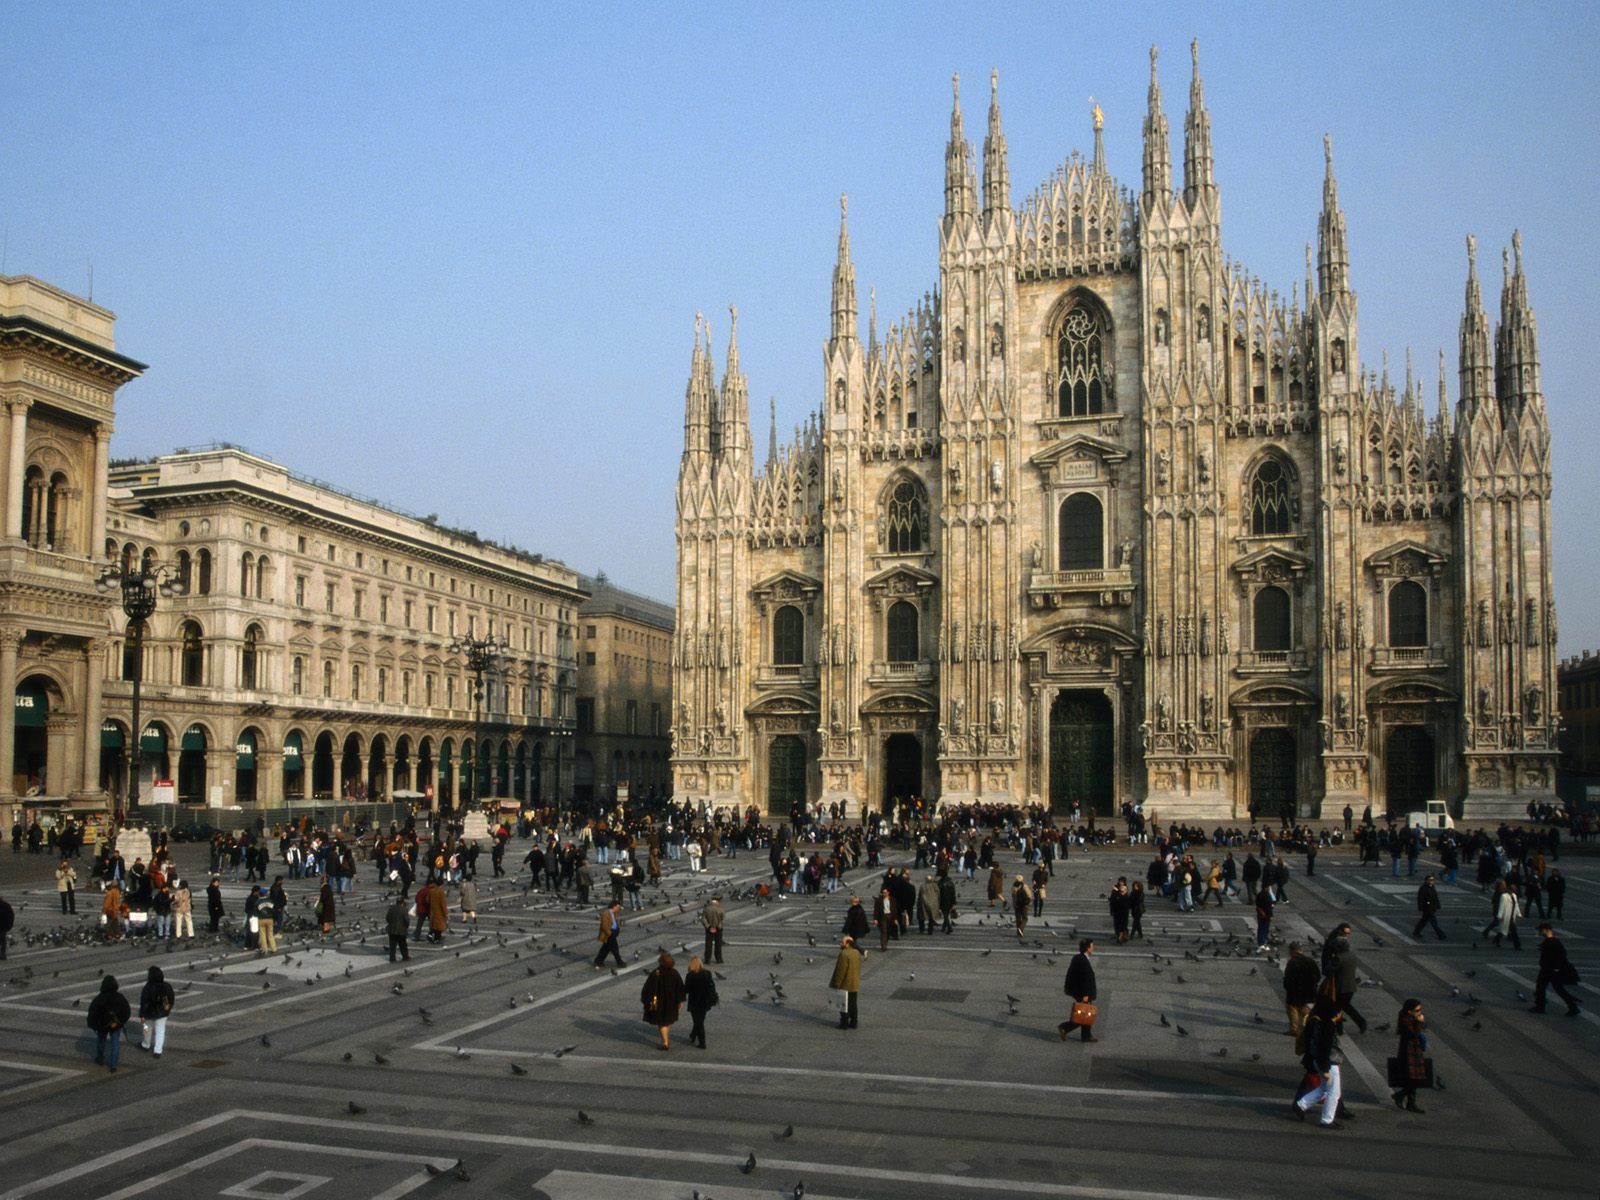 Milan.jpg